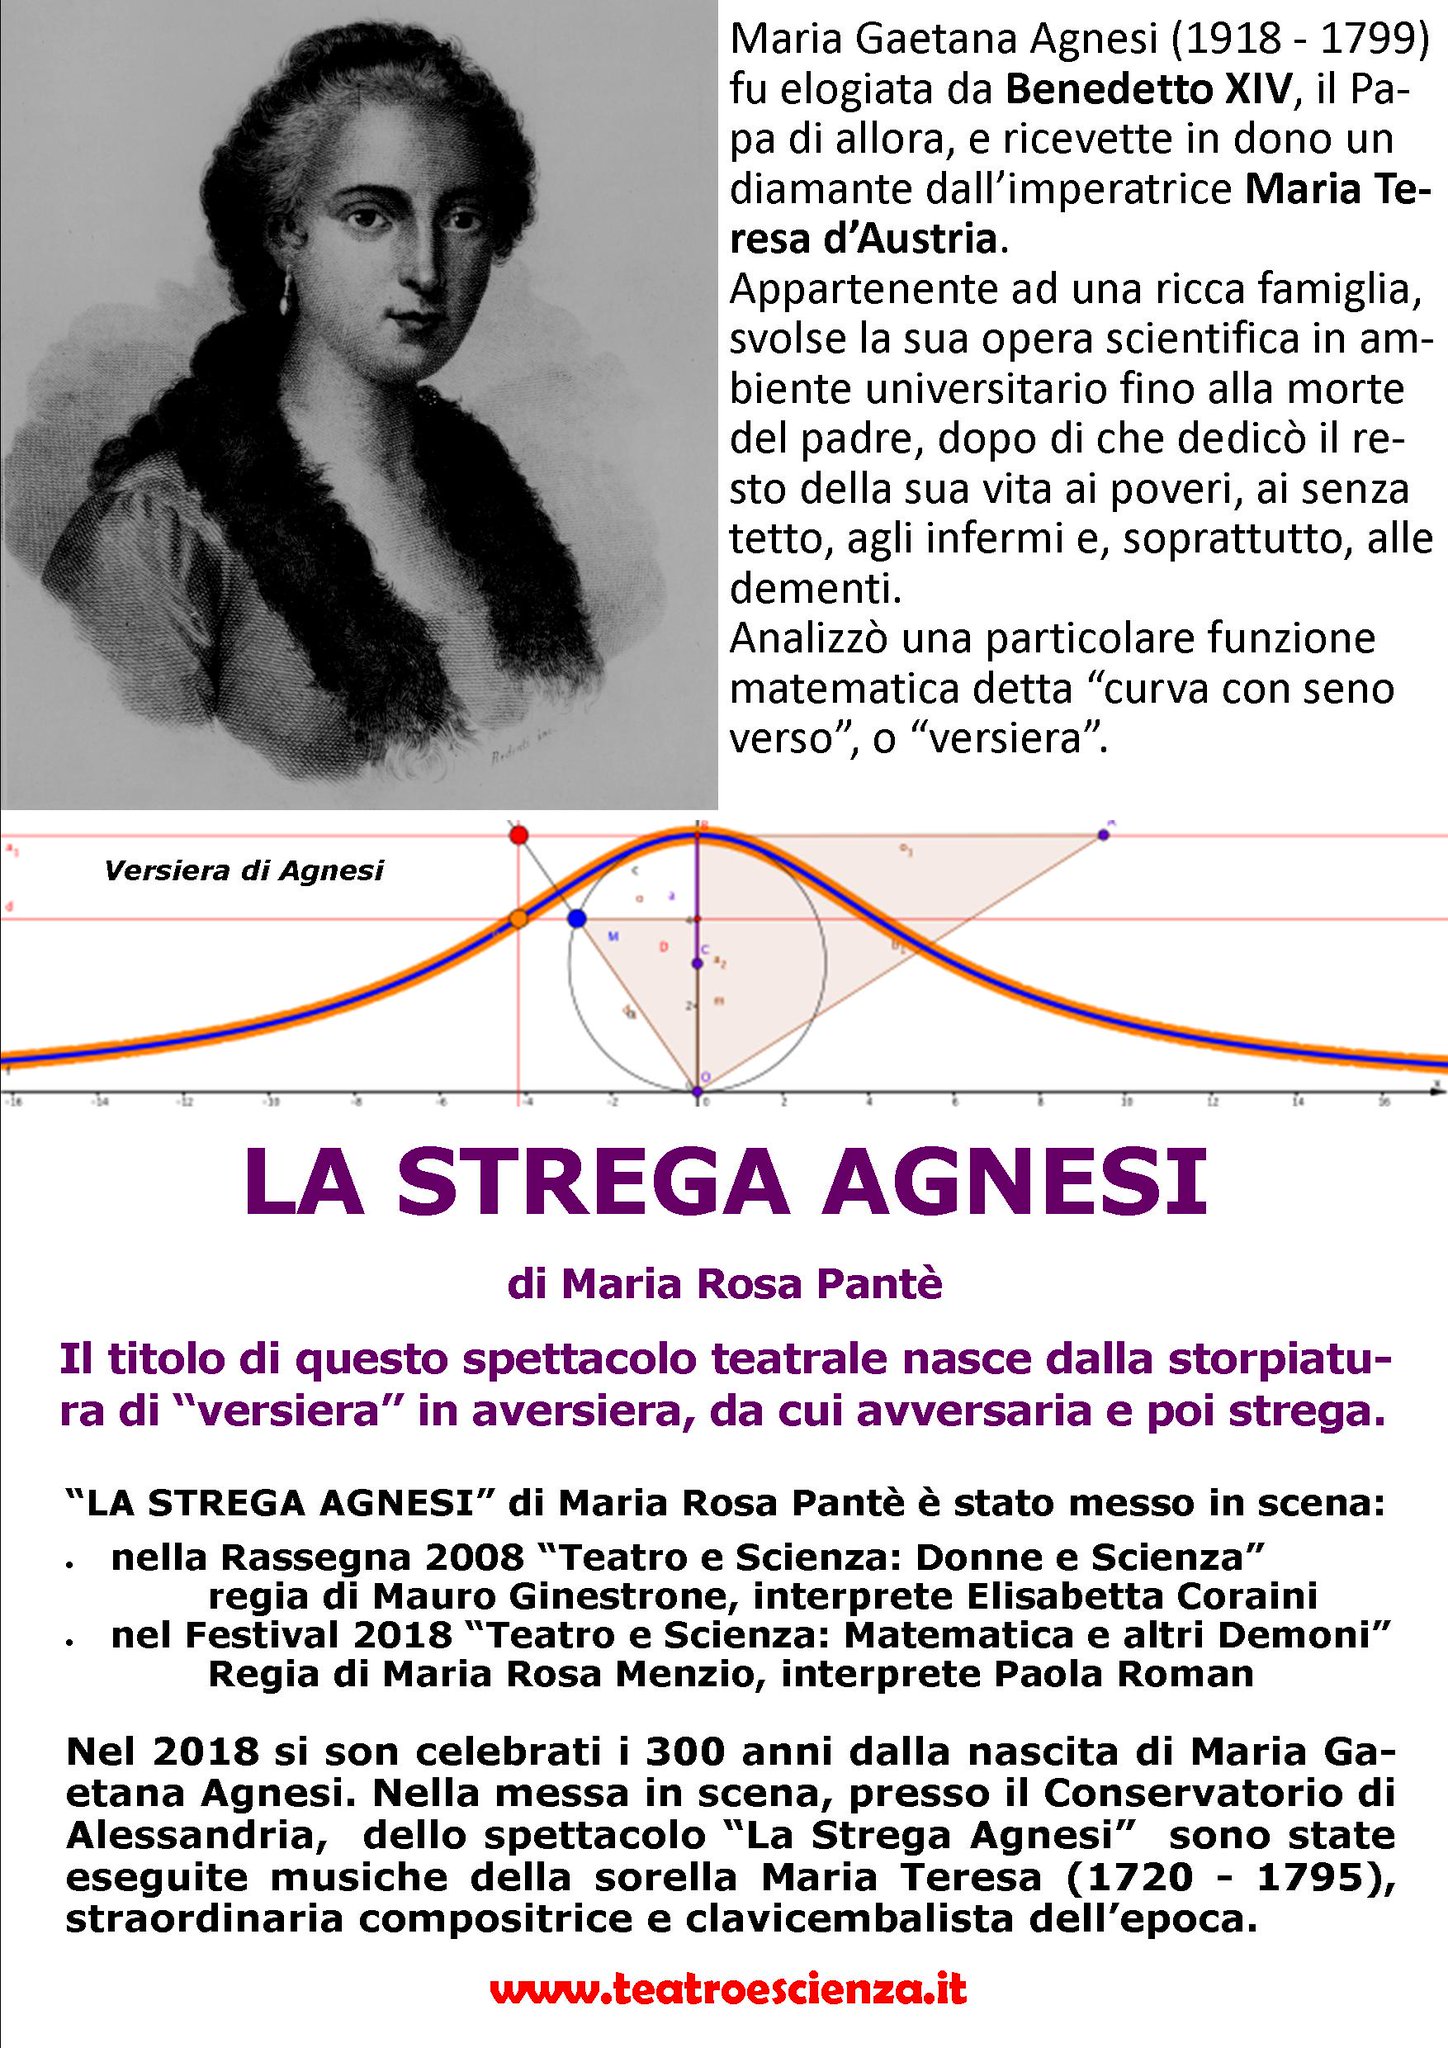 Teatro e Scienza on Twitter: "Teatro e Scienza: LEARNING EXPERIENCE - Maria Gaetana Agnesi (1718 - 1799) è considerata da molti la più grande matematica italiana. Fu la prima donna ad essere